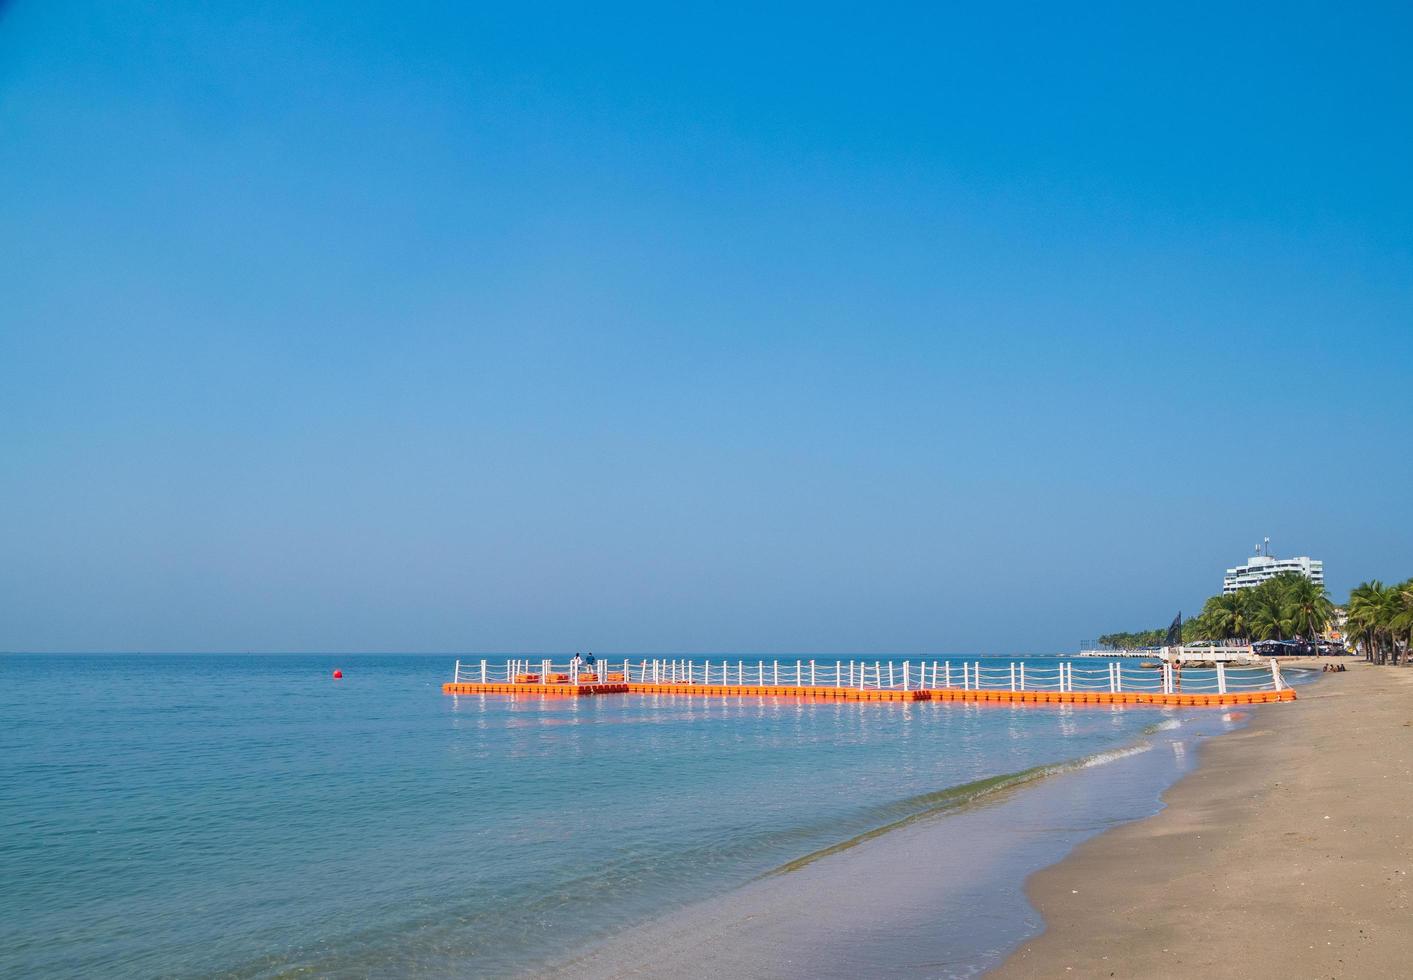 flytande bryggor längs stranden är plats för turister promenad. förtöjningsbåt plastponton som flyter i havsvatten. blå havsutsikt blå bakgrund se våg lugnt landskap synvinkel sommar natur tropisk foto